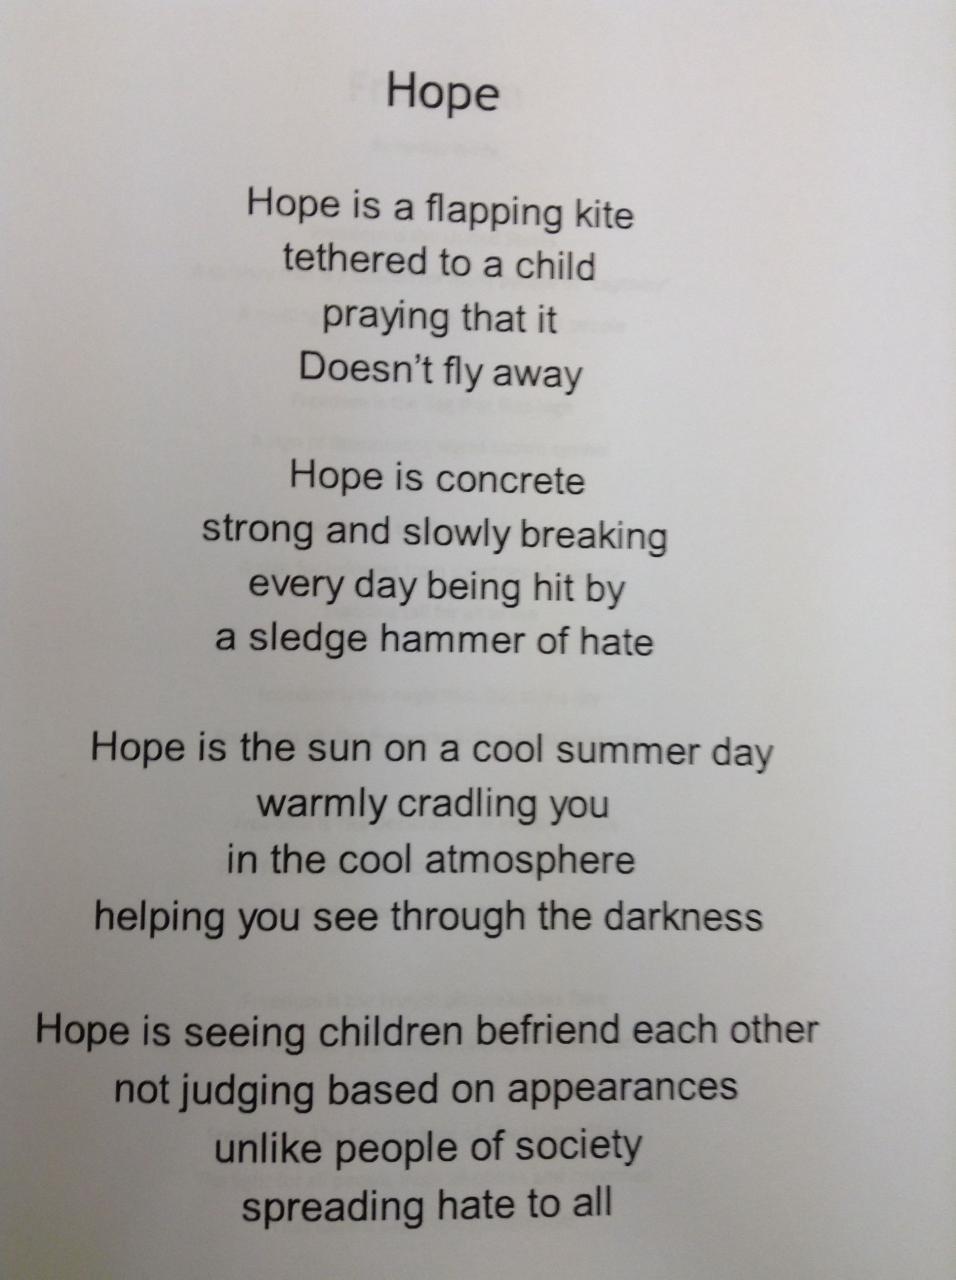 8th grader extended metaphor poem Metaphor poems, Writing metaphors, Poetry worksheets